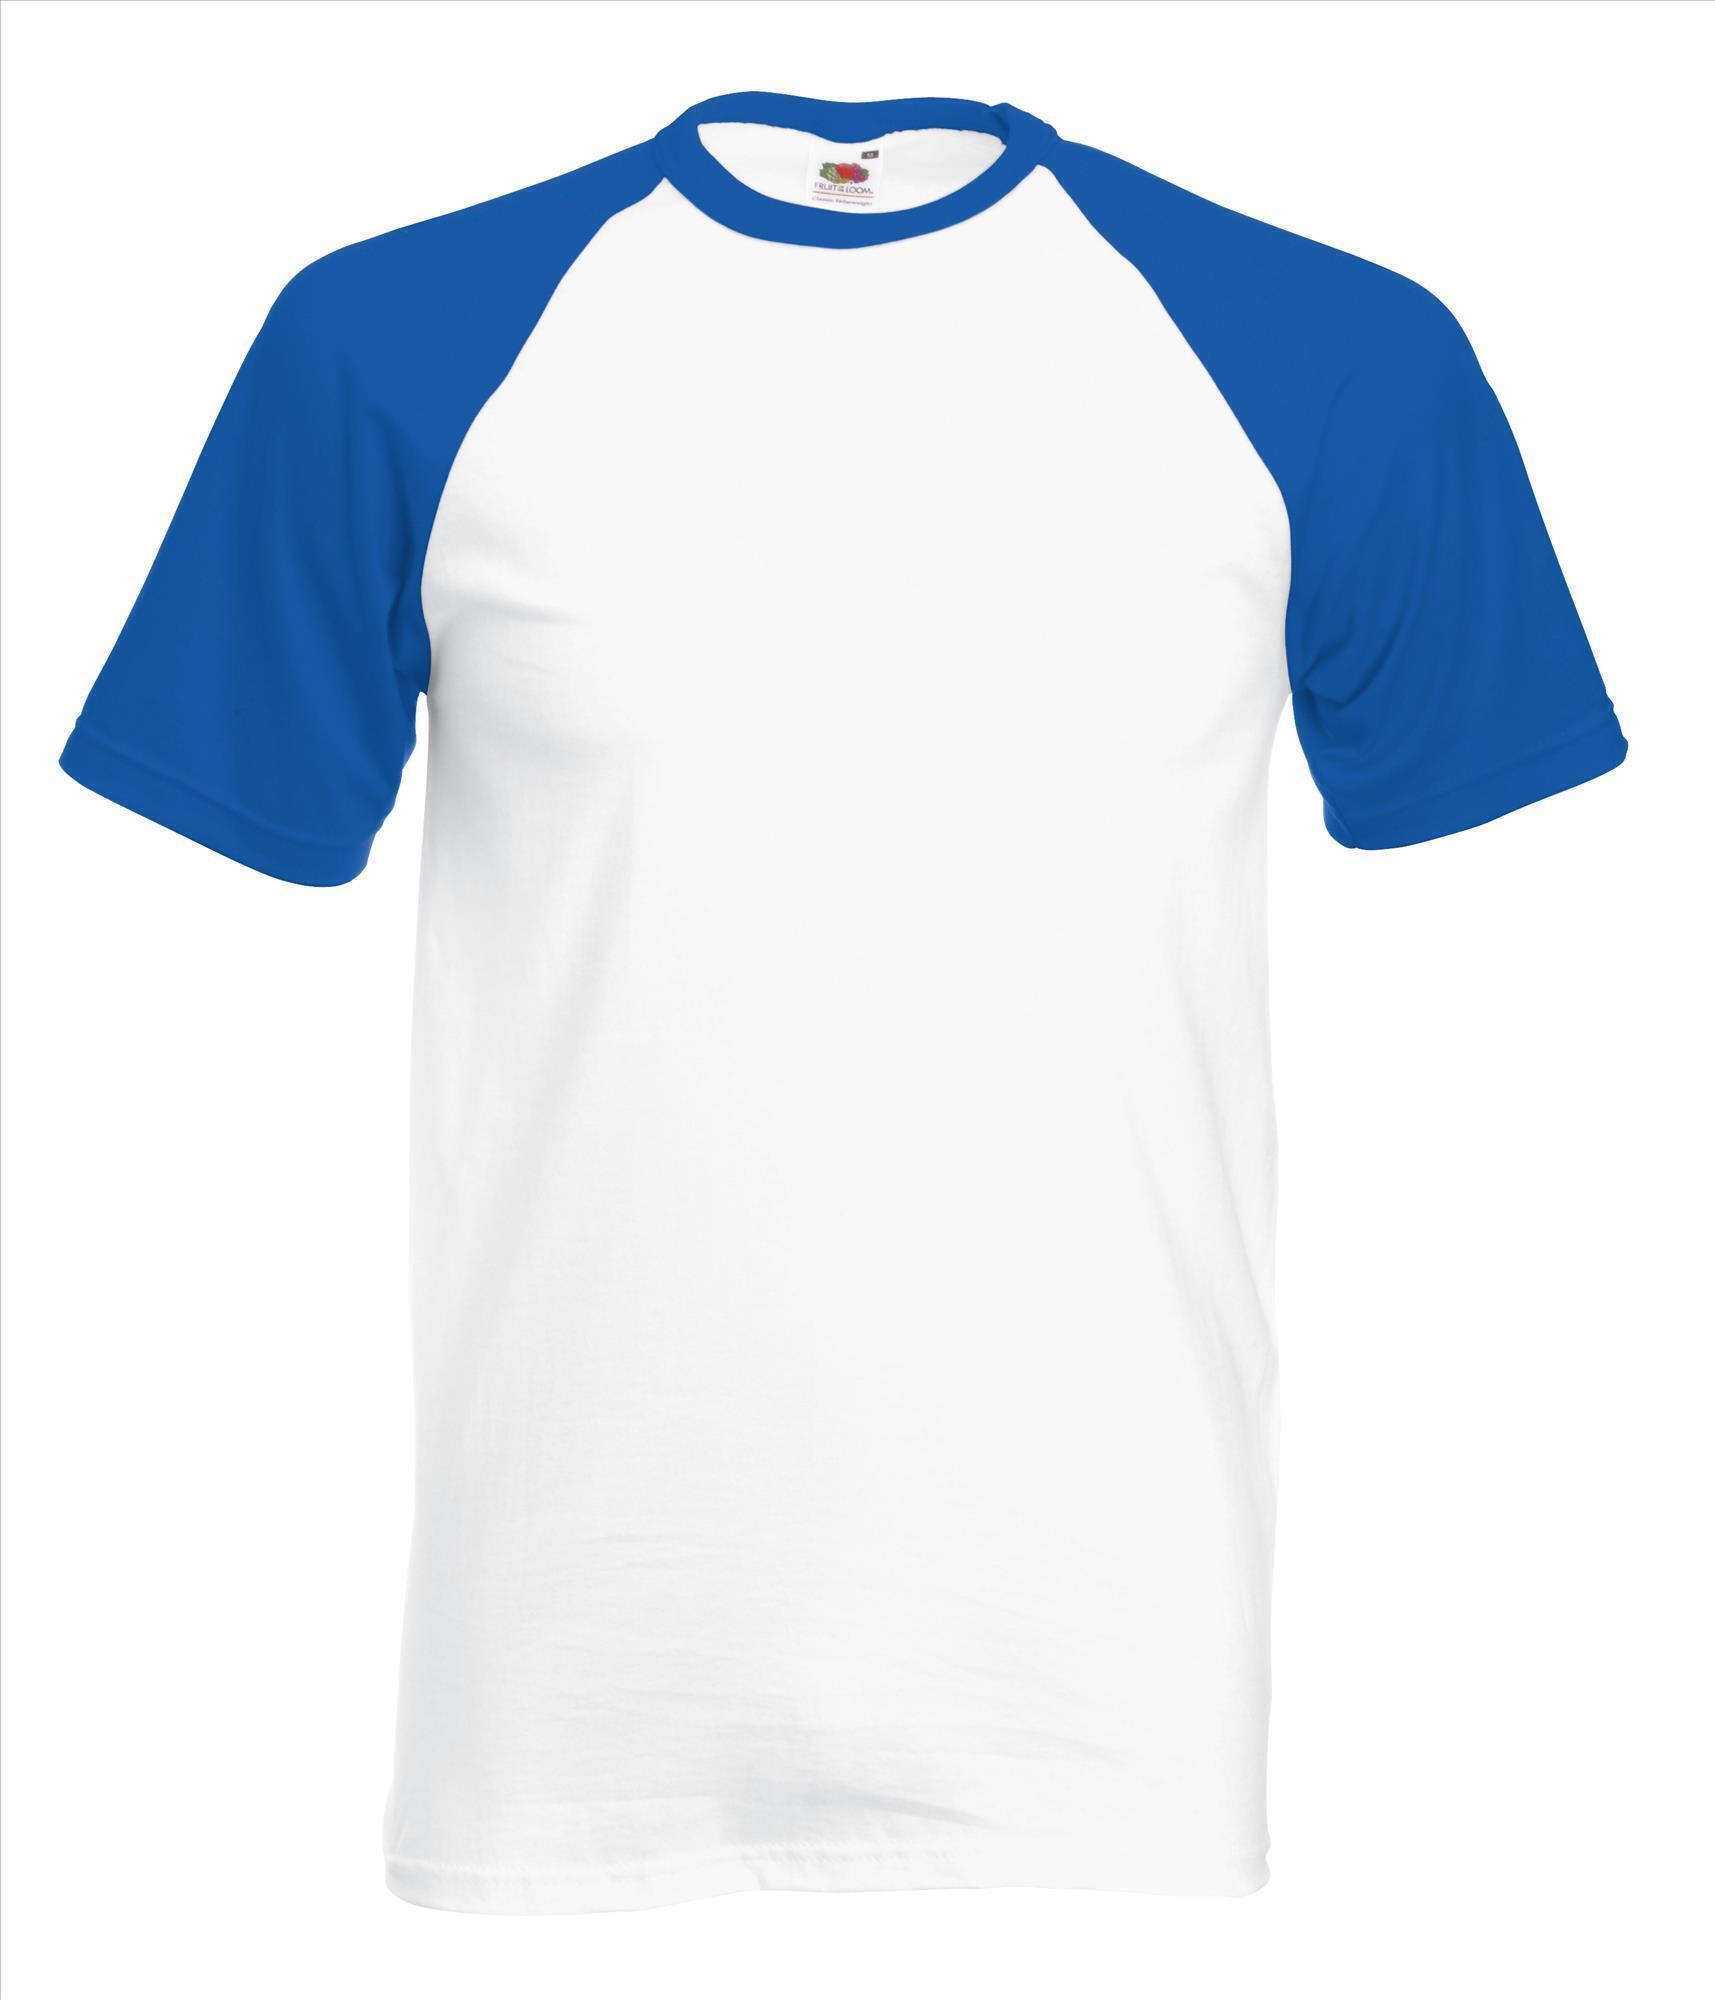 Heren T-shirt met raglanmouwen voor mannen wit t-shirt met blauwe mouwen